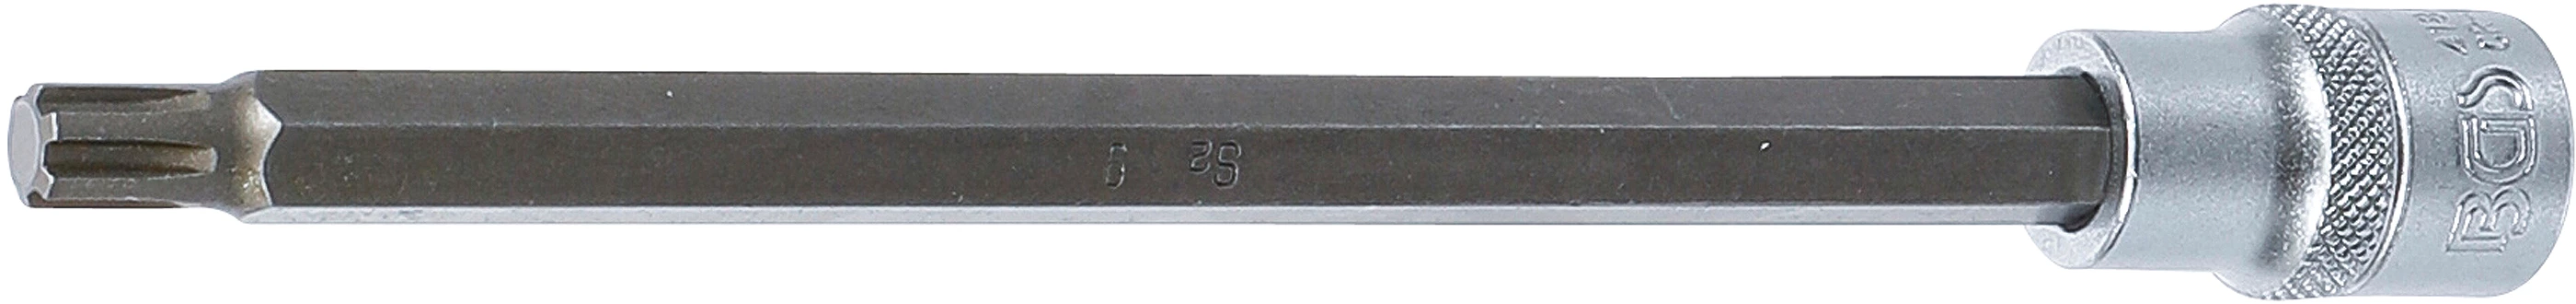 Bit-Einsatz - Länge 200 mm - 1/2" - Keil-Profil (für RIBE) M9